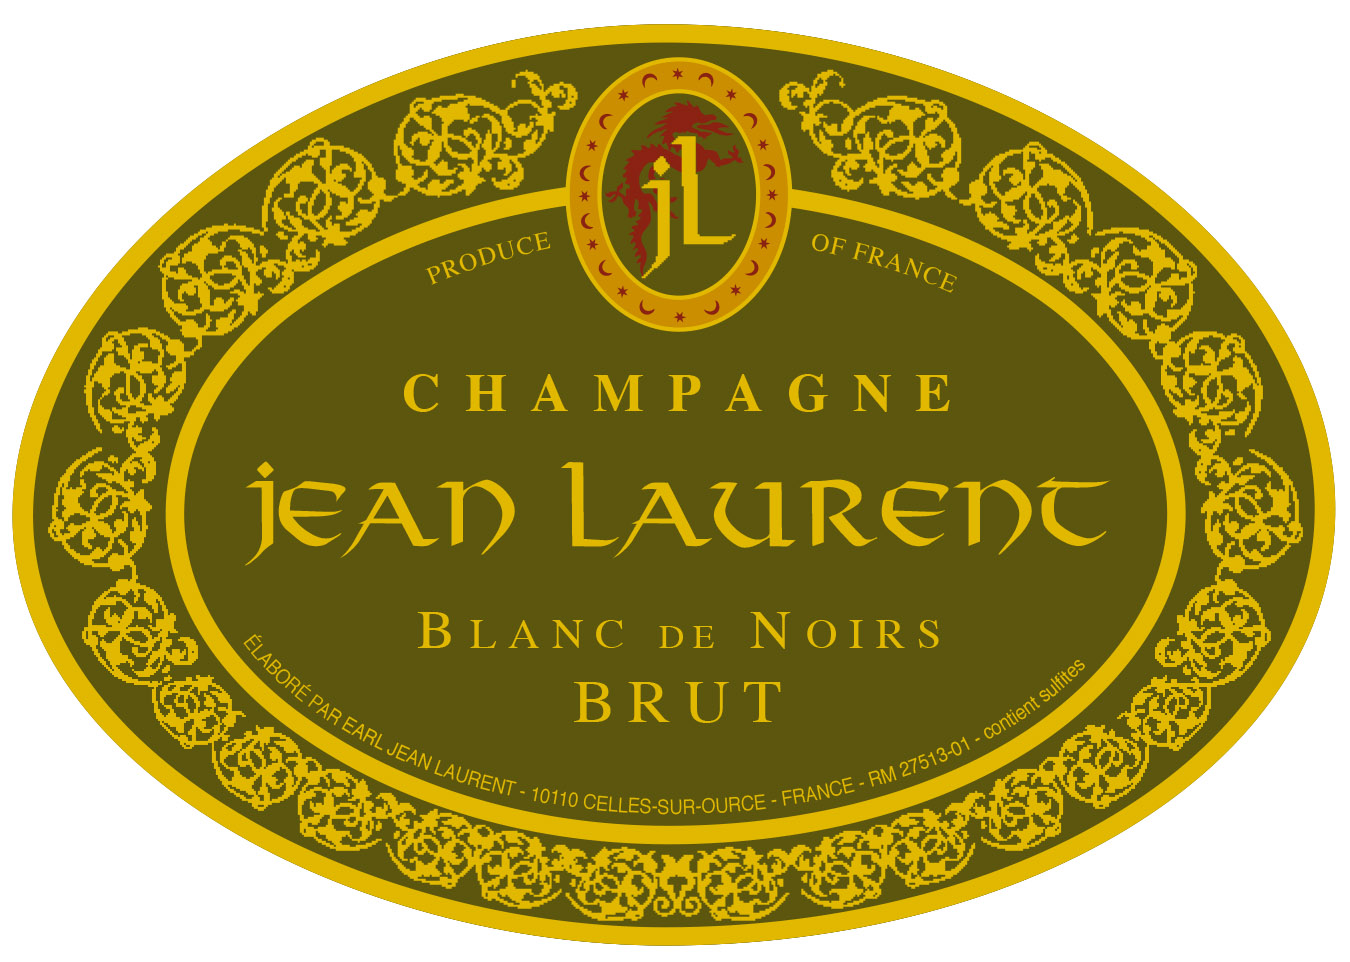 NV Jean Laurent Brut Blanc de Noirs Champagne Aube - click image for full description